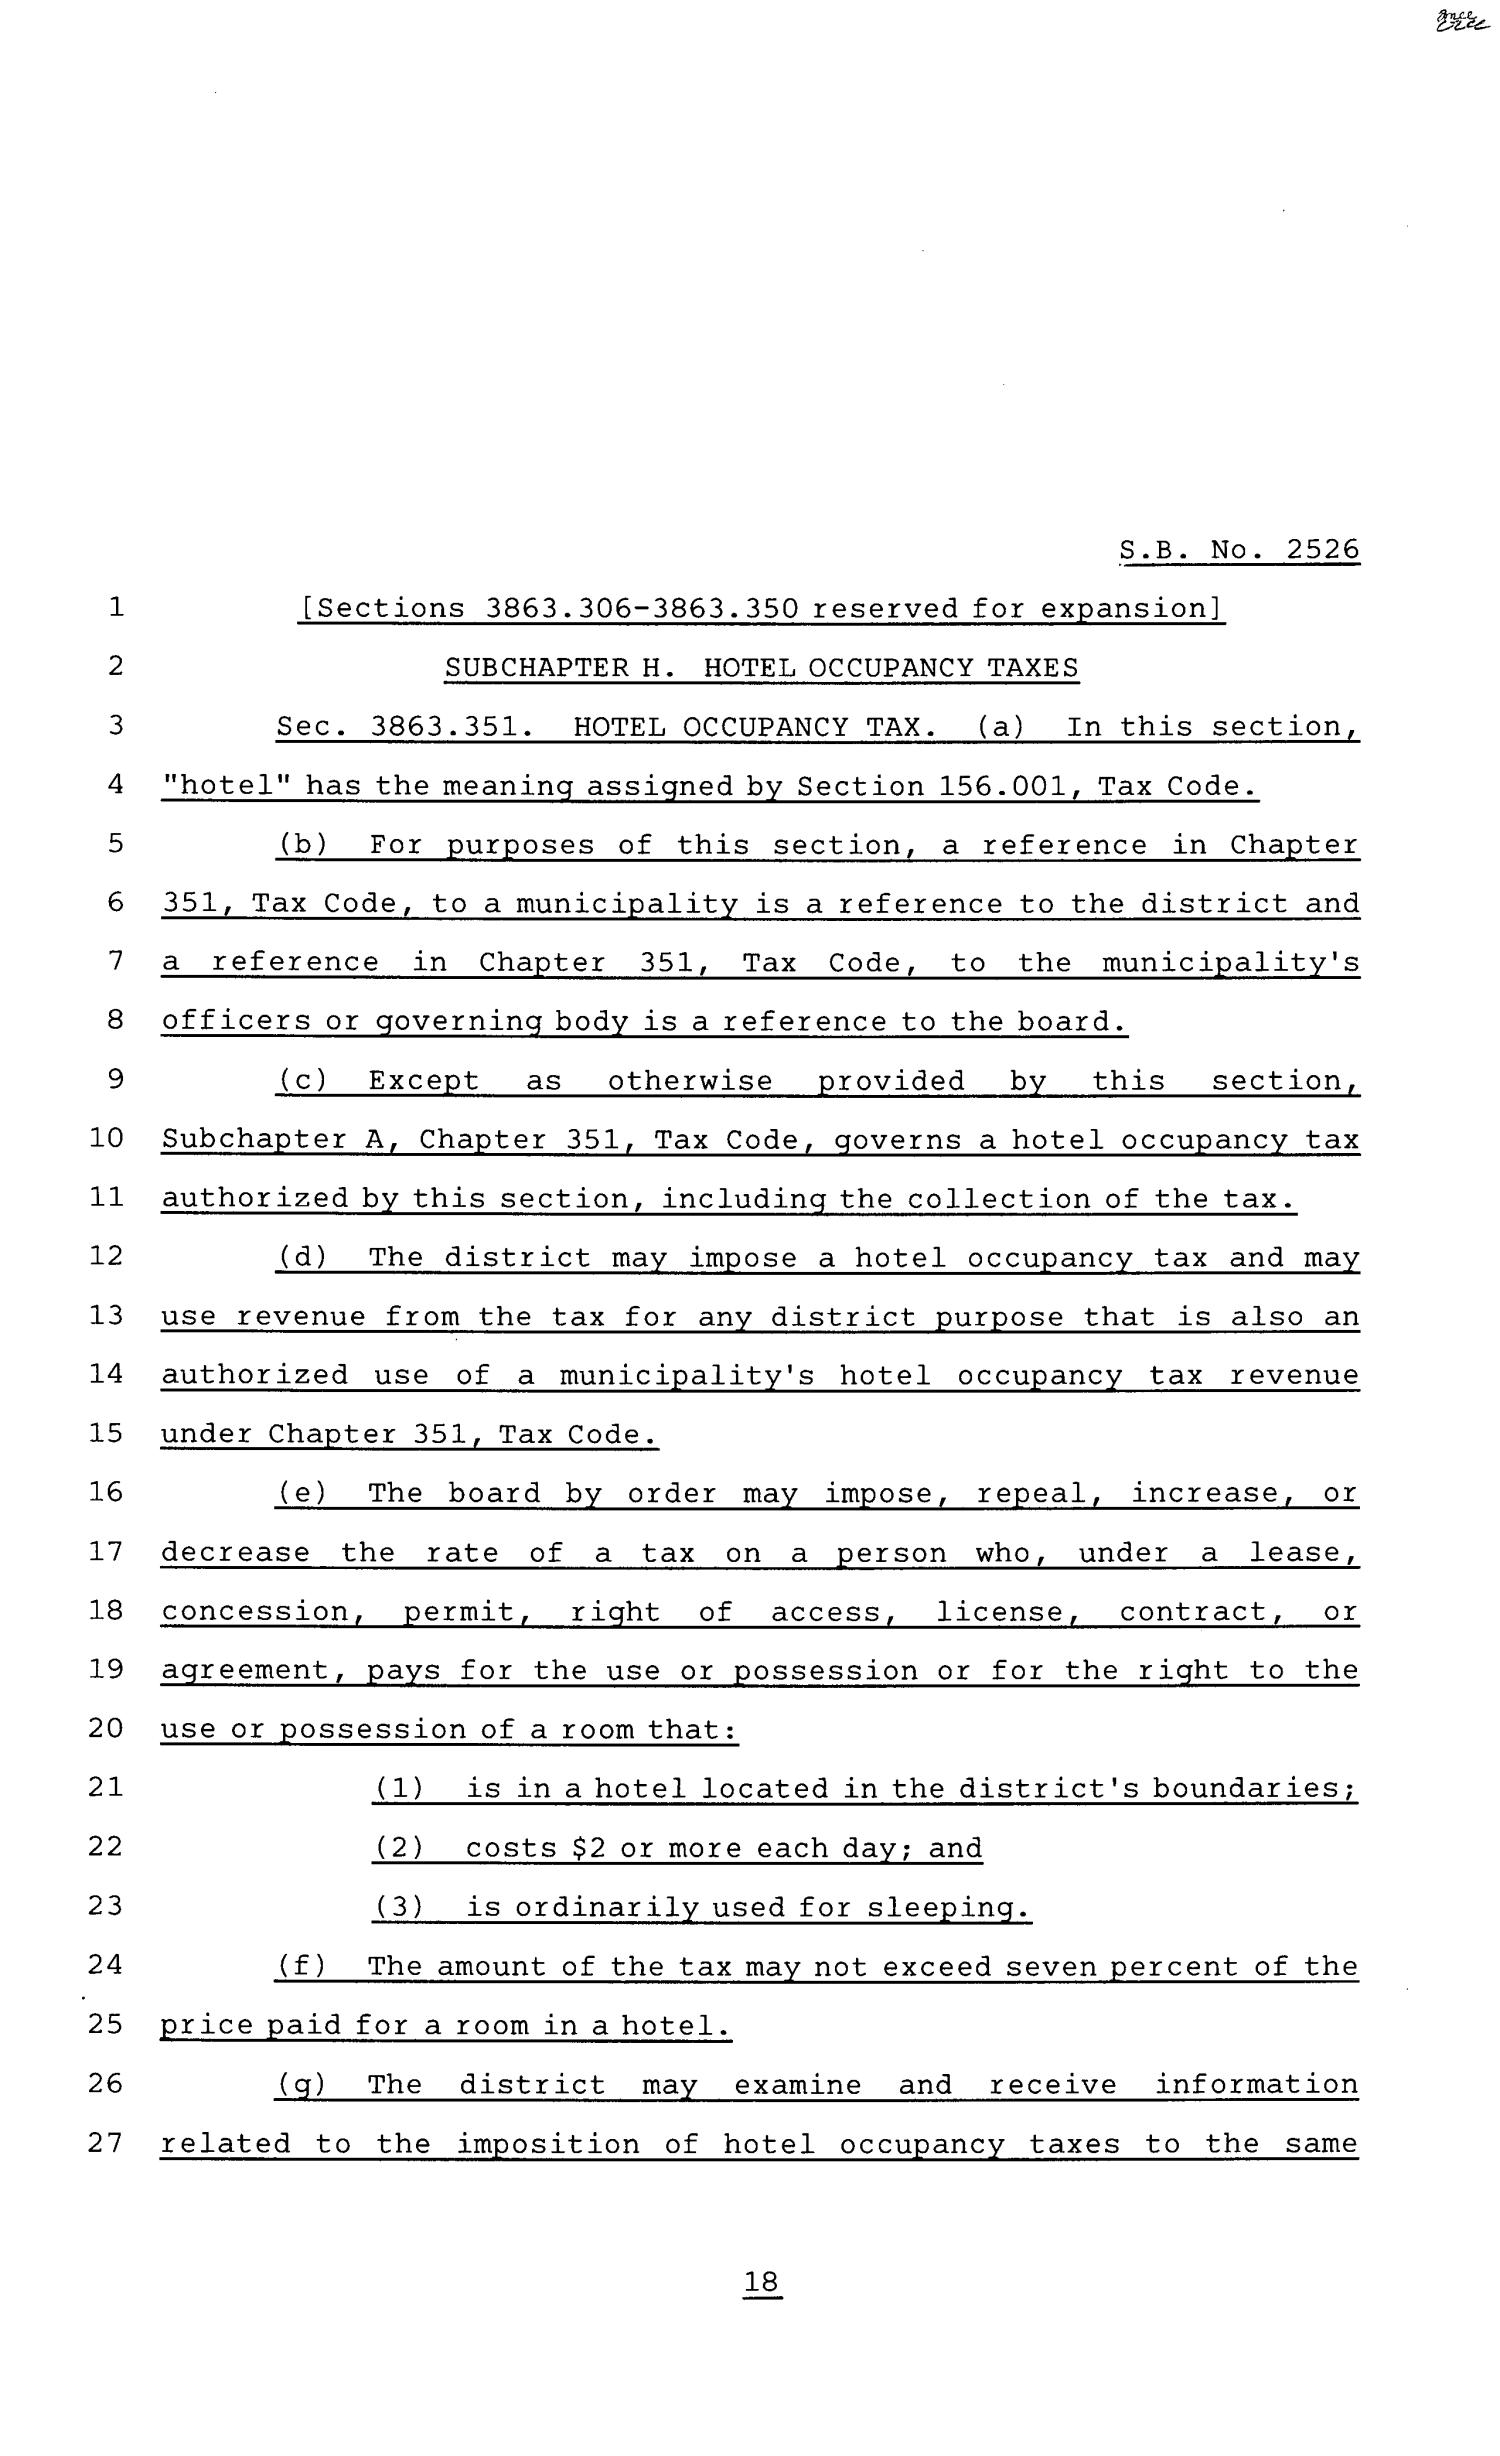 81st Texas Legislature, Senate Bill 2526, Chapter 883
                                                
                                                    [Sequence #]: 18 of 33
                                                